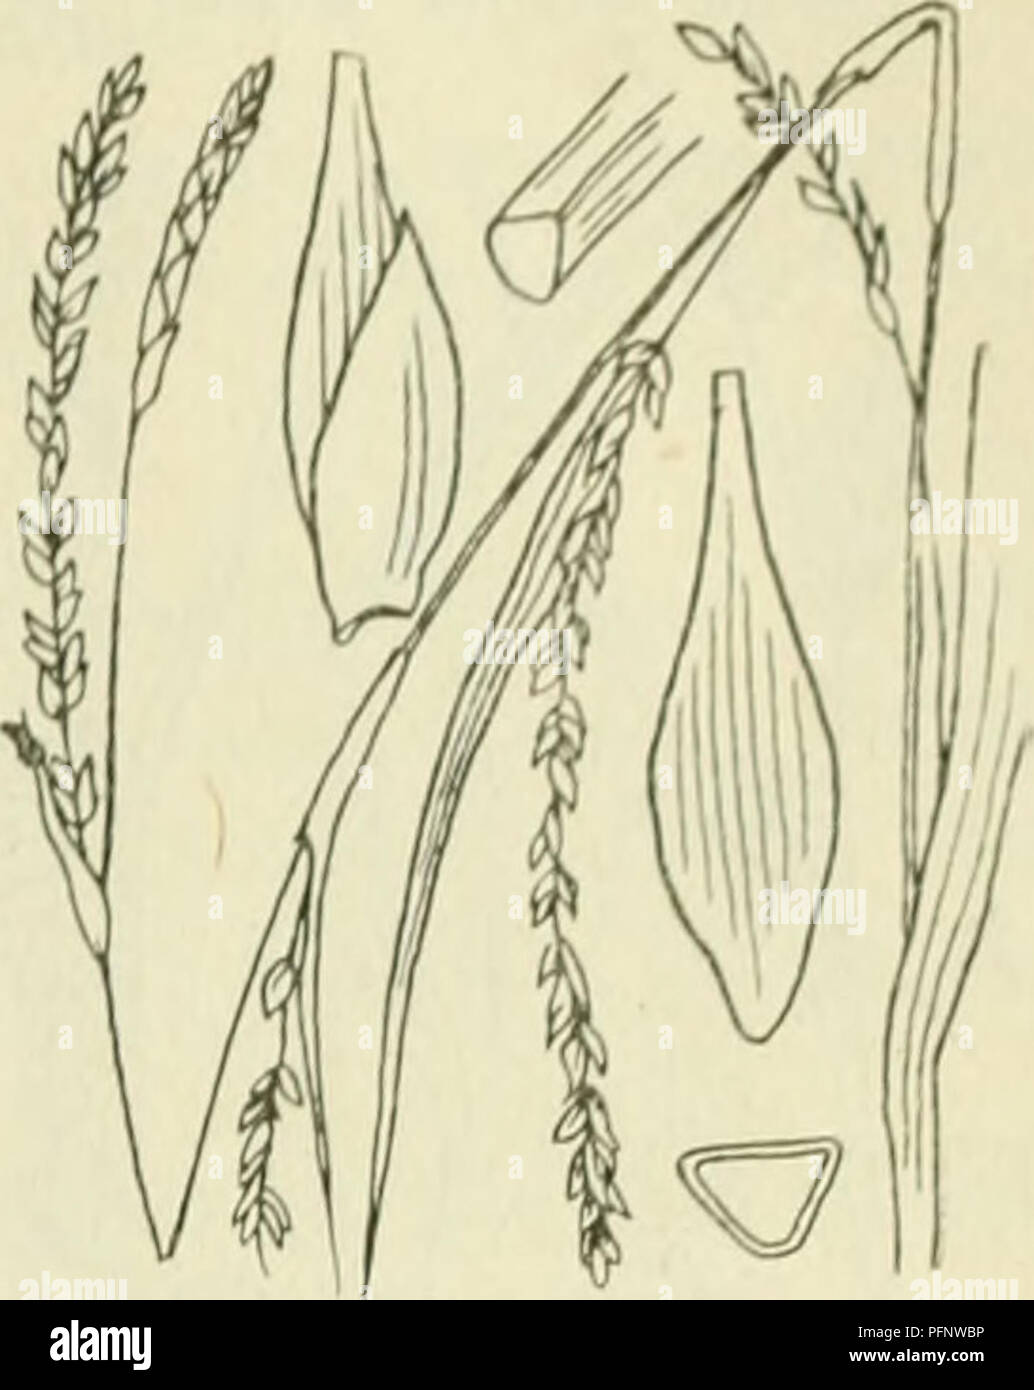 . De flora van Nederland. Plants. FAM1L11-: 17. â CYPERACEAE. 403. Carex strigosa Fig. 326. zaani even ina als ile iinitjes. Deze (fiÂ«. 32(5) zijn drickantit,'-Iancctvormitj;-ellipsoÃ¯discli, circa 3 mM lanj,', veelnervi.u, noiei(Jeliji&lt; in den zeer iiei&lt;notten snavel versmald. Het mannelijke aartje is los- bloemij;, smal, verlcn.ud, tof 5 cM lanf,', de kafjes zijn vaak iets bruinachtig'niet stevijje, groene middenstreep. De vruchten zijn zeer klein, nog niet 2 mM lang, eirond, driekanti.u. ^â . 6-10 dM. Mei, Juni. Voorkomen in Europa en in Nederland. De plant komt in Midden-Europa ve Stock Photo